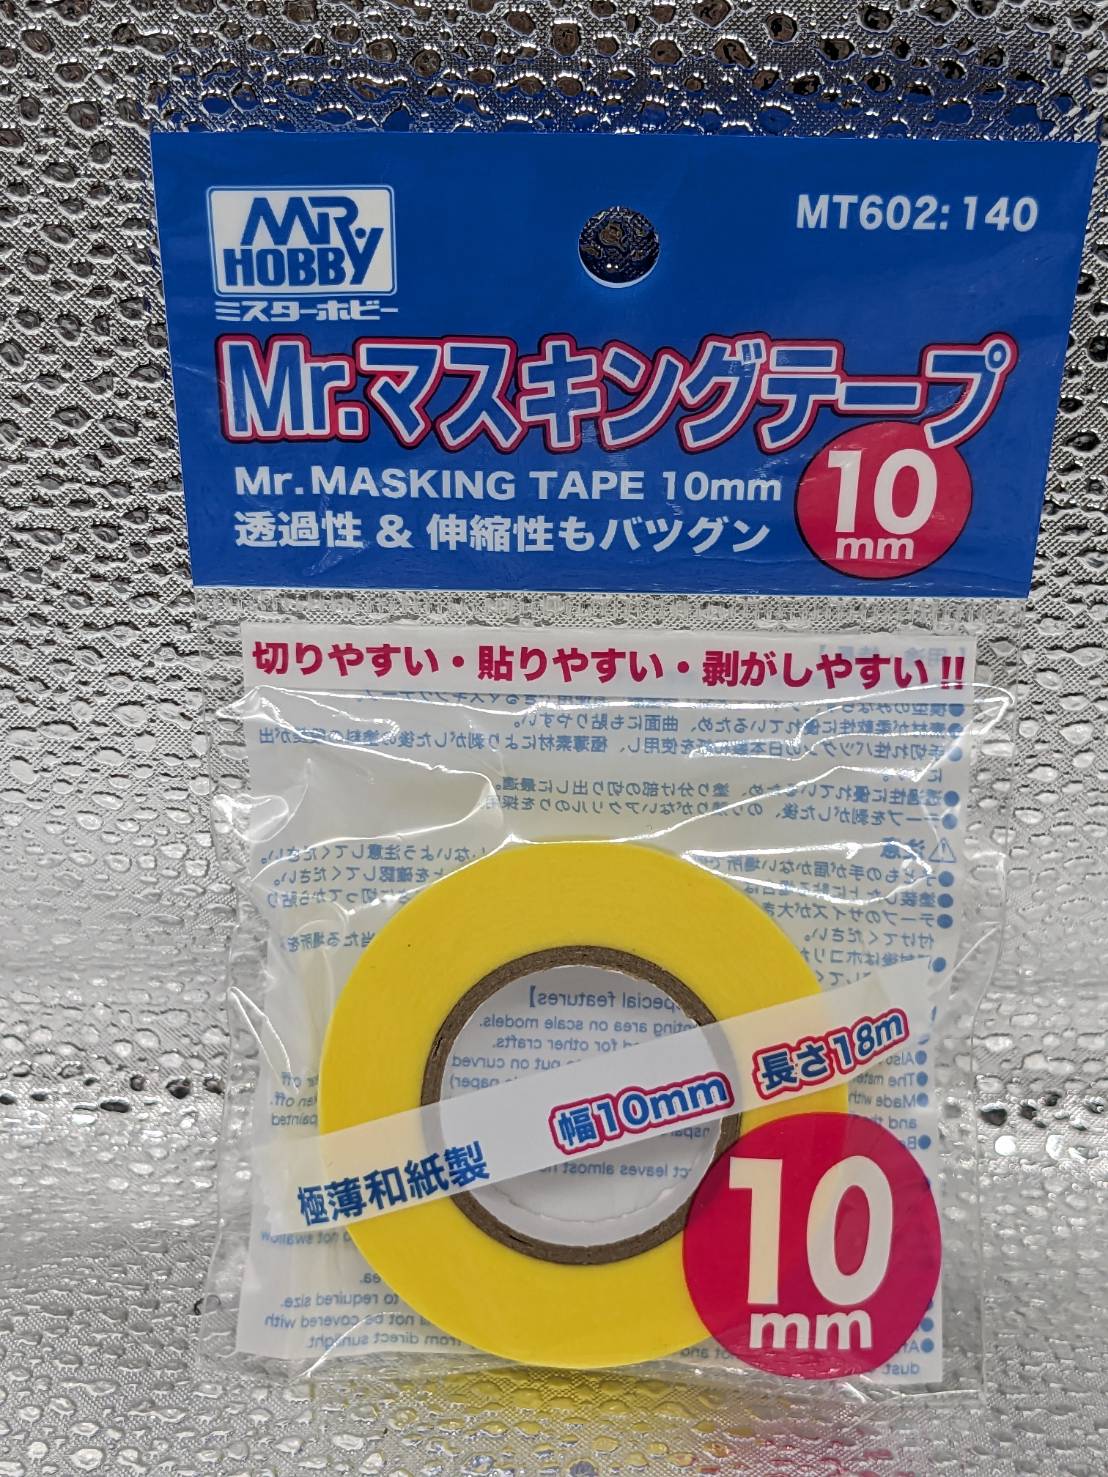 GSIクレオス Mr.TOOLS MT602:140 Mr.マスキングテープ 10mm